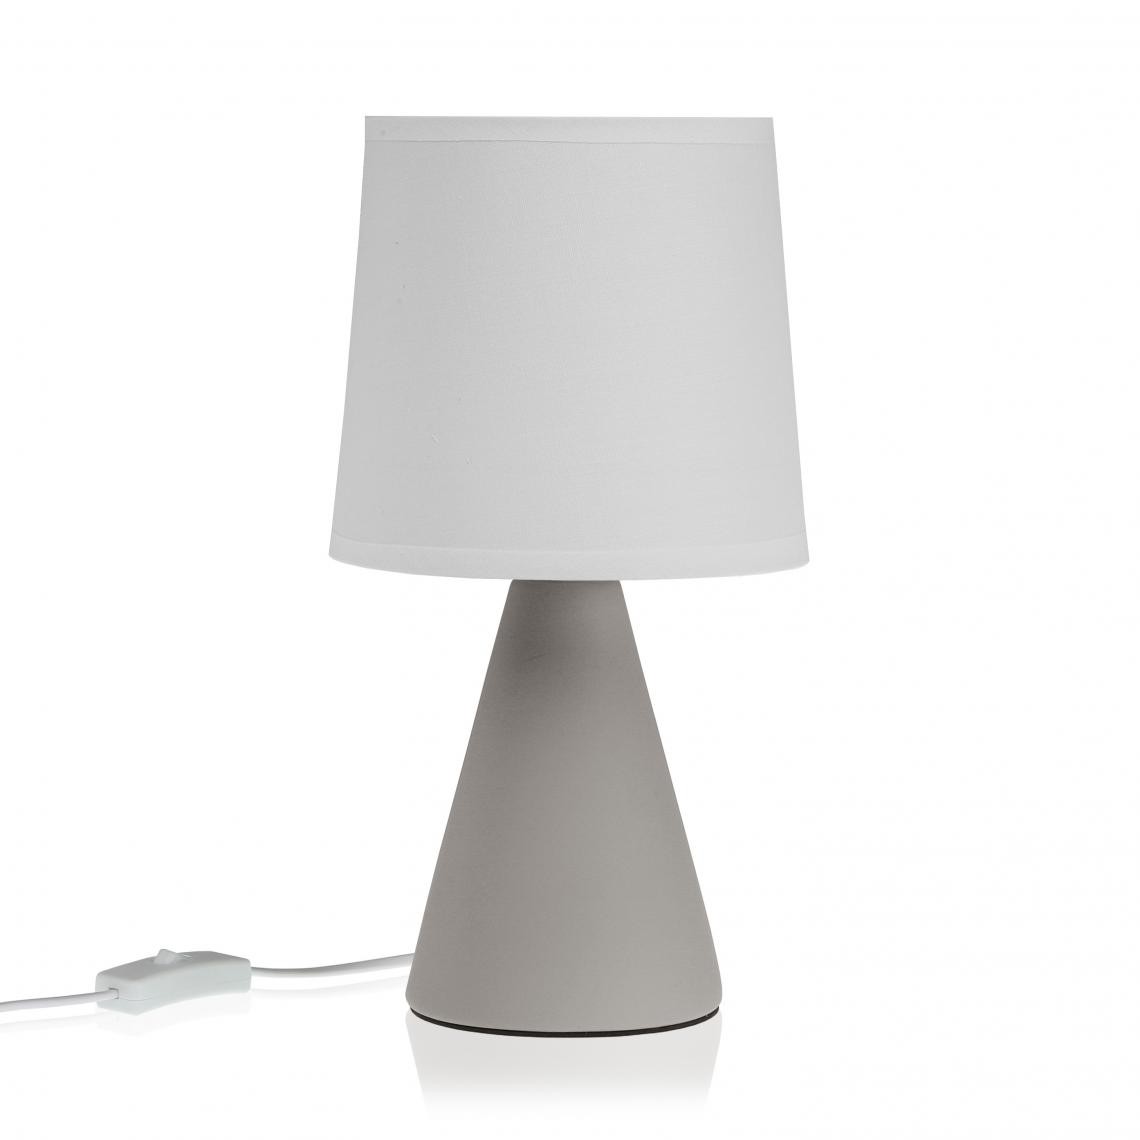 3S. x Home - Lampe de table Gris SLIVE - Lampes à poser